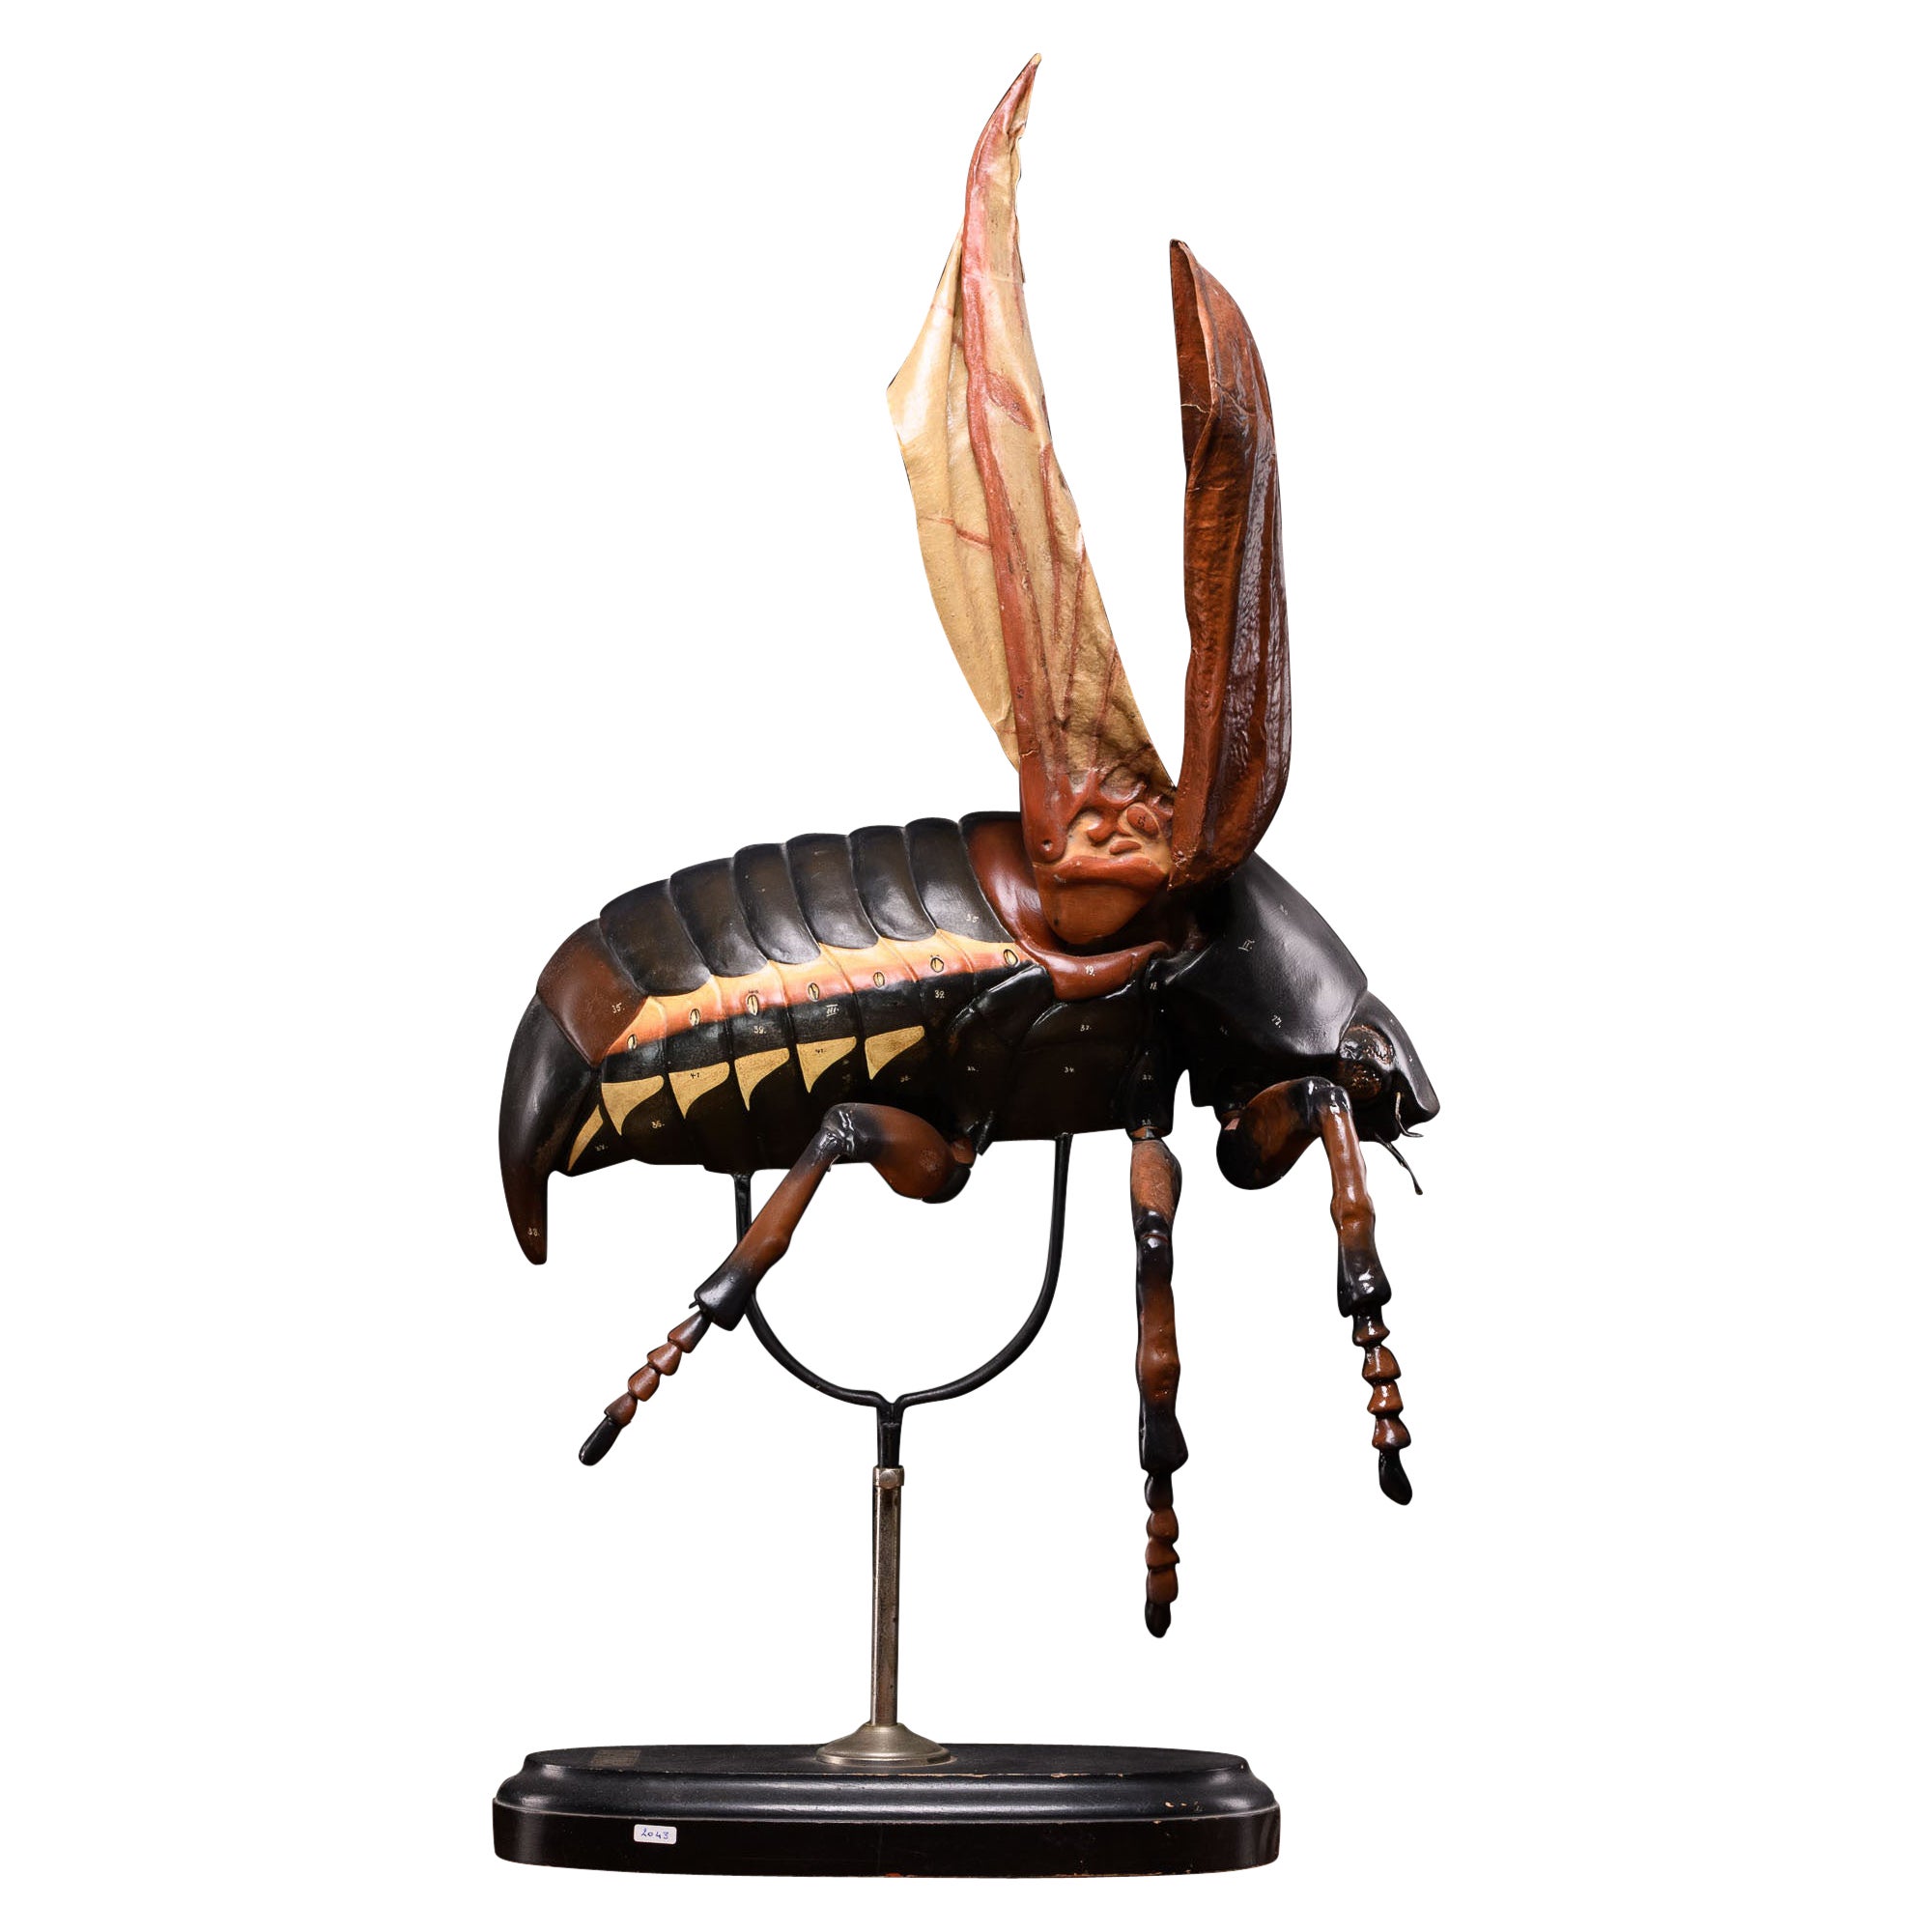 Didactical Modell des Cockchafer- oder May-Mückens, verkauft von der Denoyer-Geppert Company im Angebot